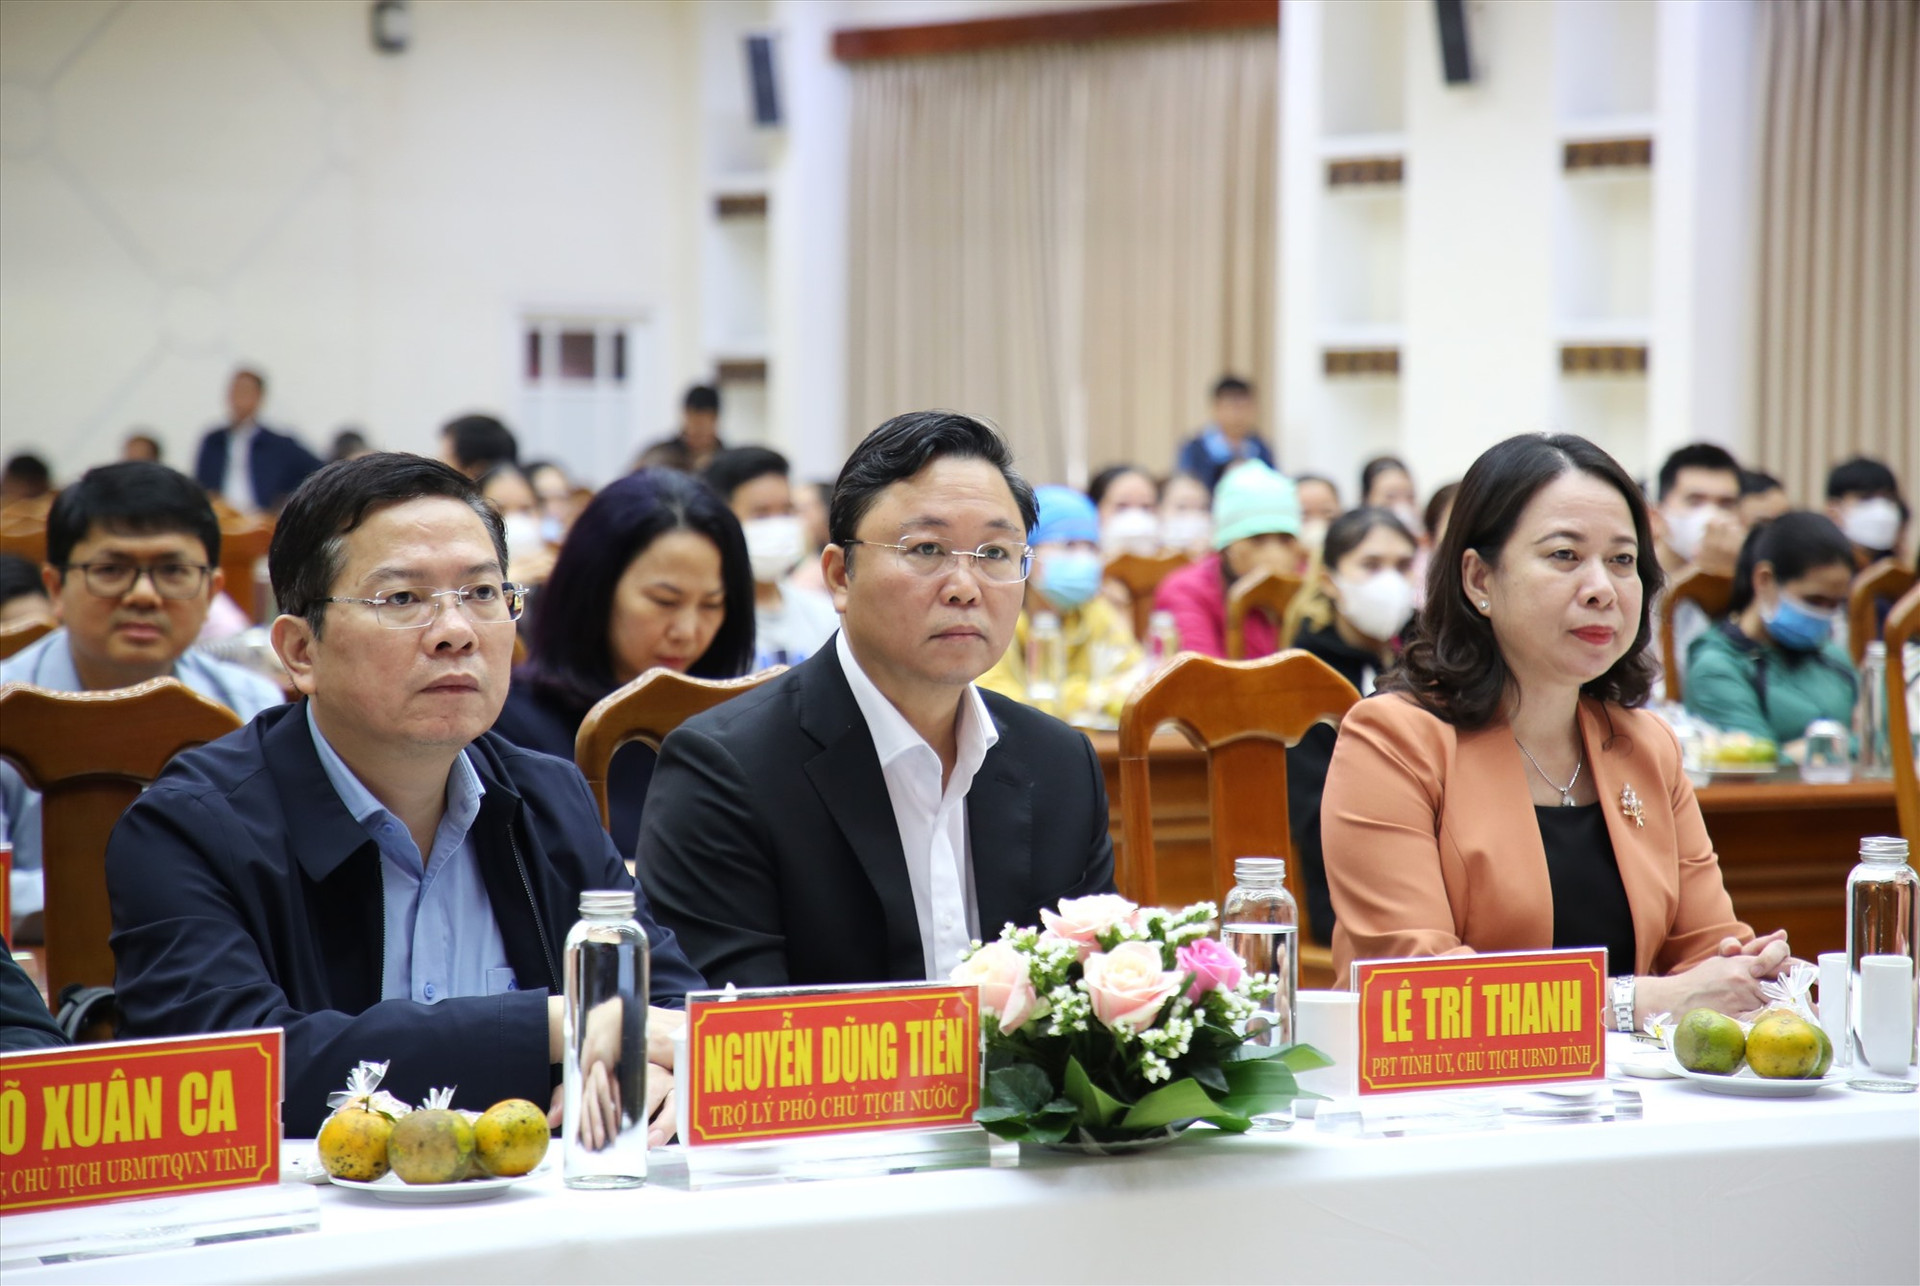 Phó Chủ tịch nước Võ Thị Ánh Xuân, cùng Chủ tịch UBND tỉnh Lê Trí Thanh và các đại biểu tham dự buổi gặp, trao quà tết. Ảnh: A.N